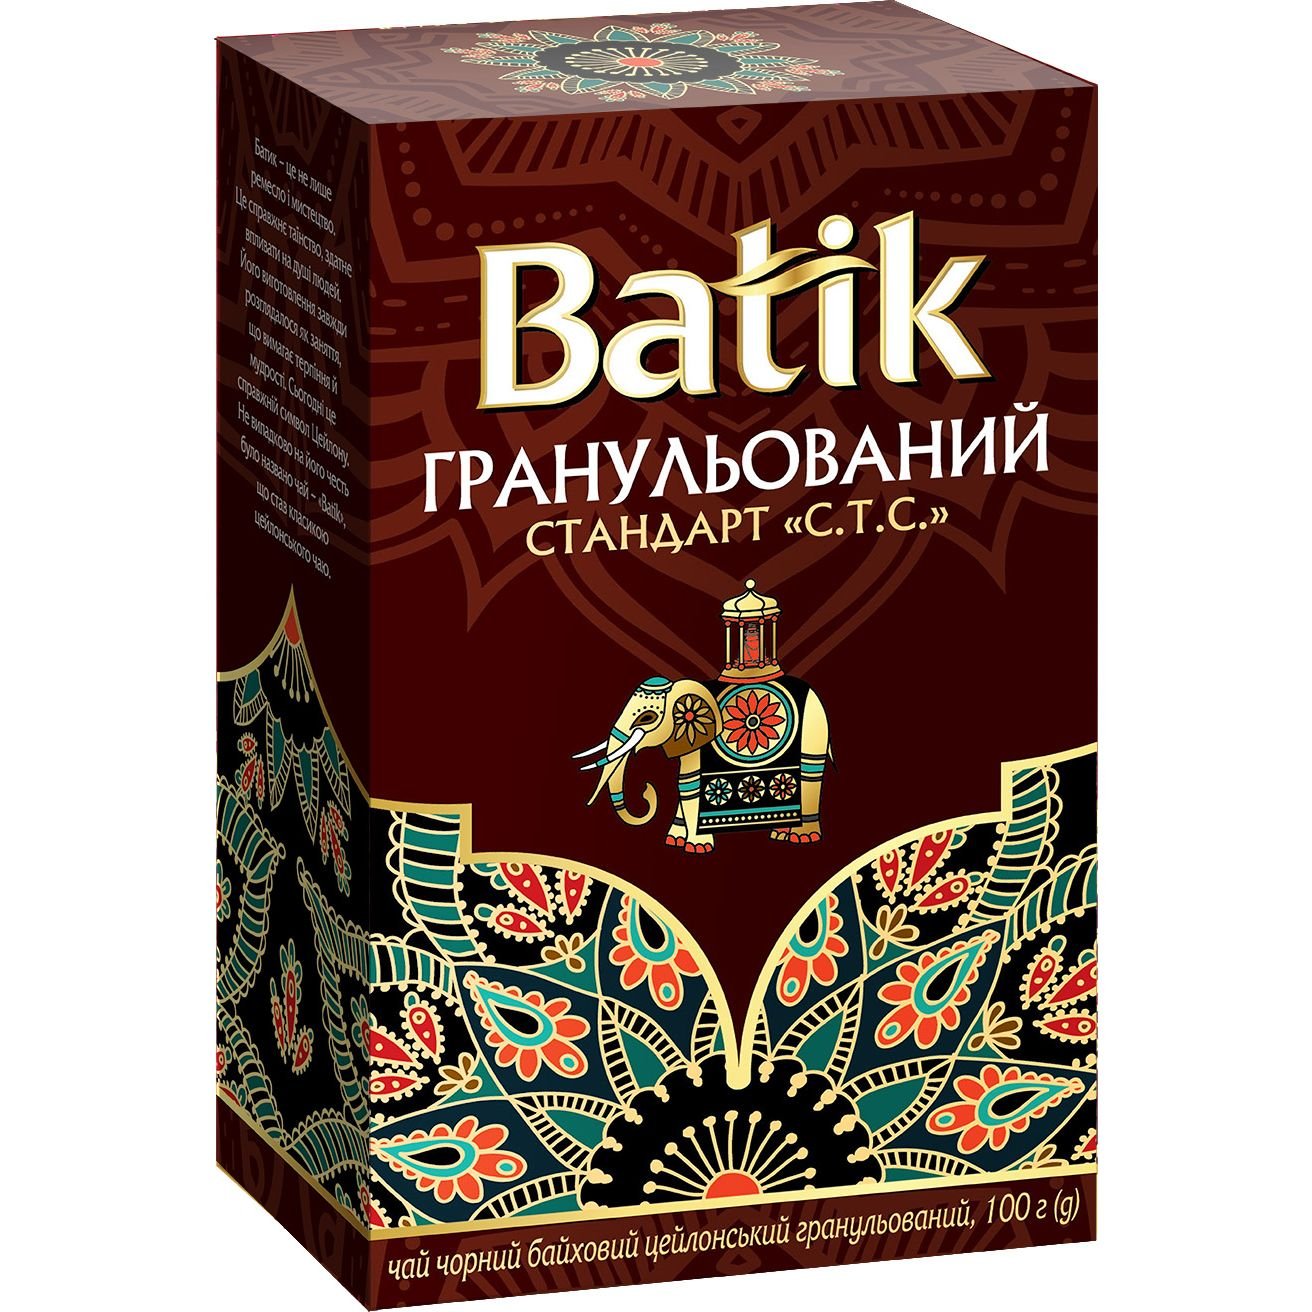 Чай черный Batik Стандарт C.T.C. гранулированный, байховый, цейлонский, 100 г - фото 1